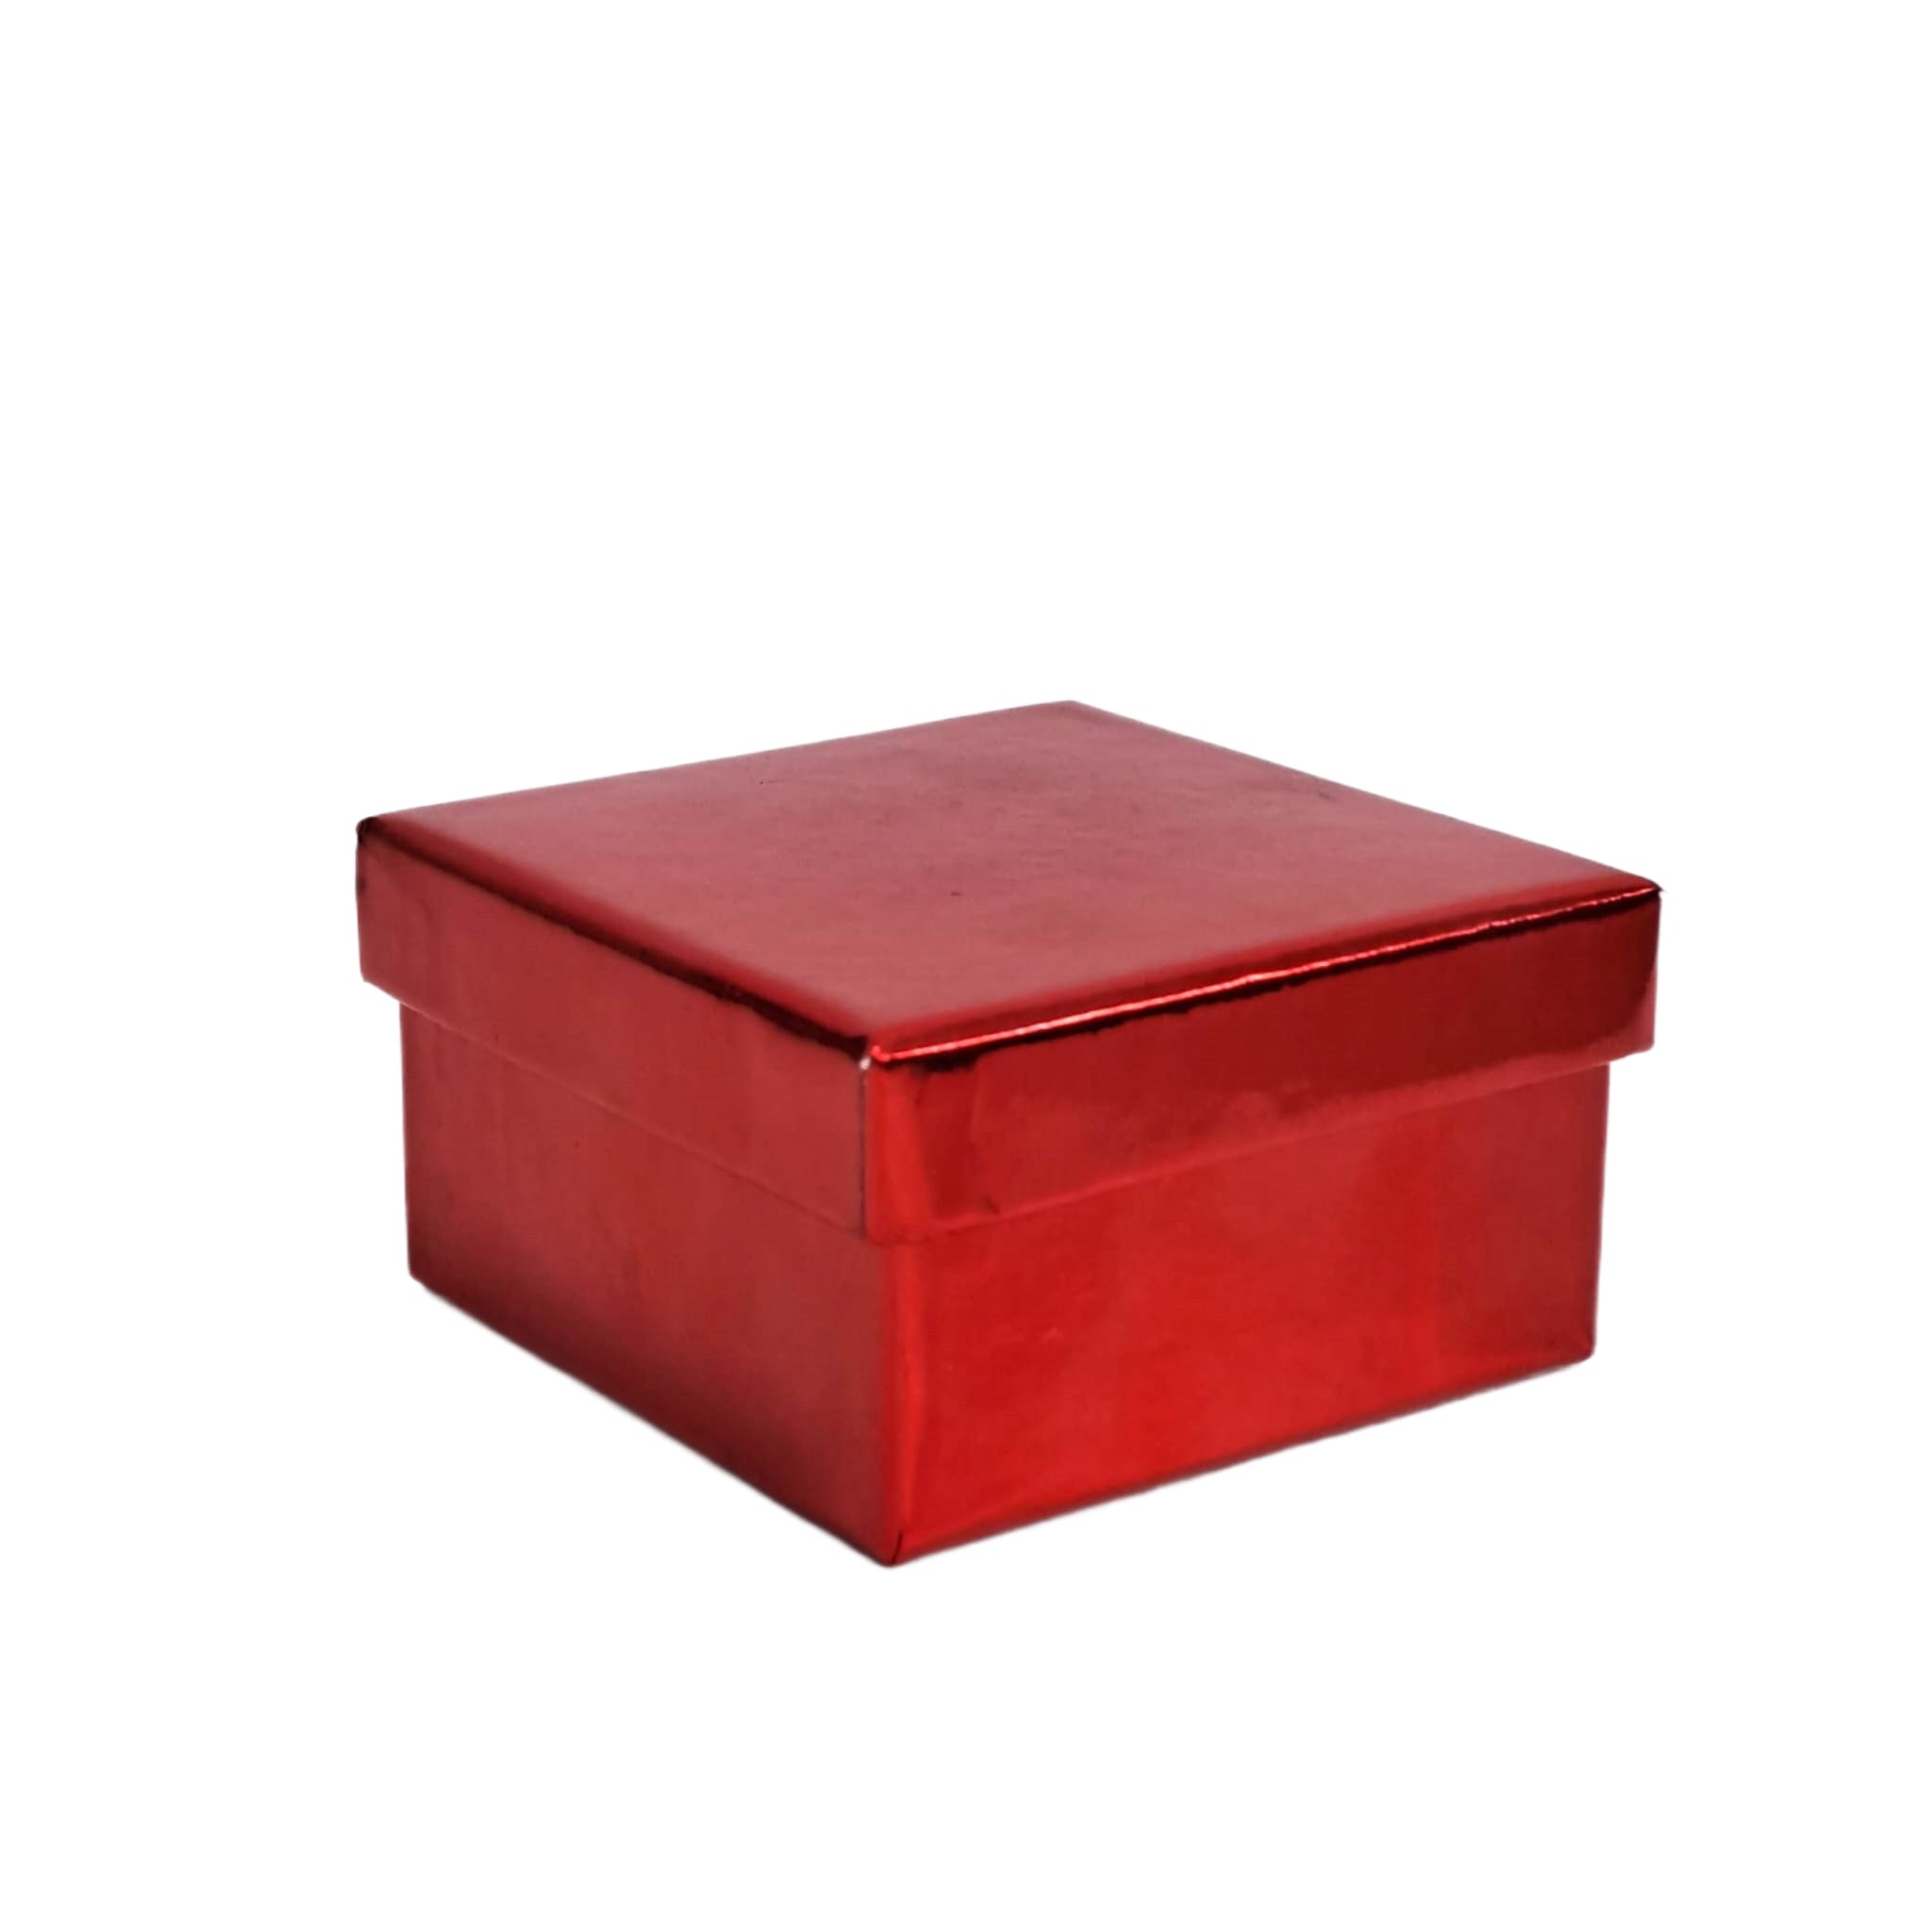 Cutie pentru cadou, rosie, cu capac, 8.5x8.5x4.5cm